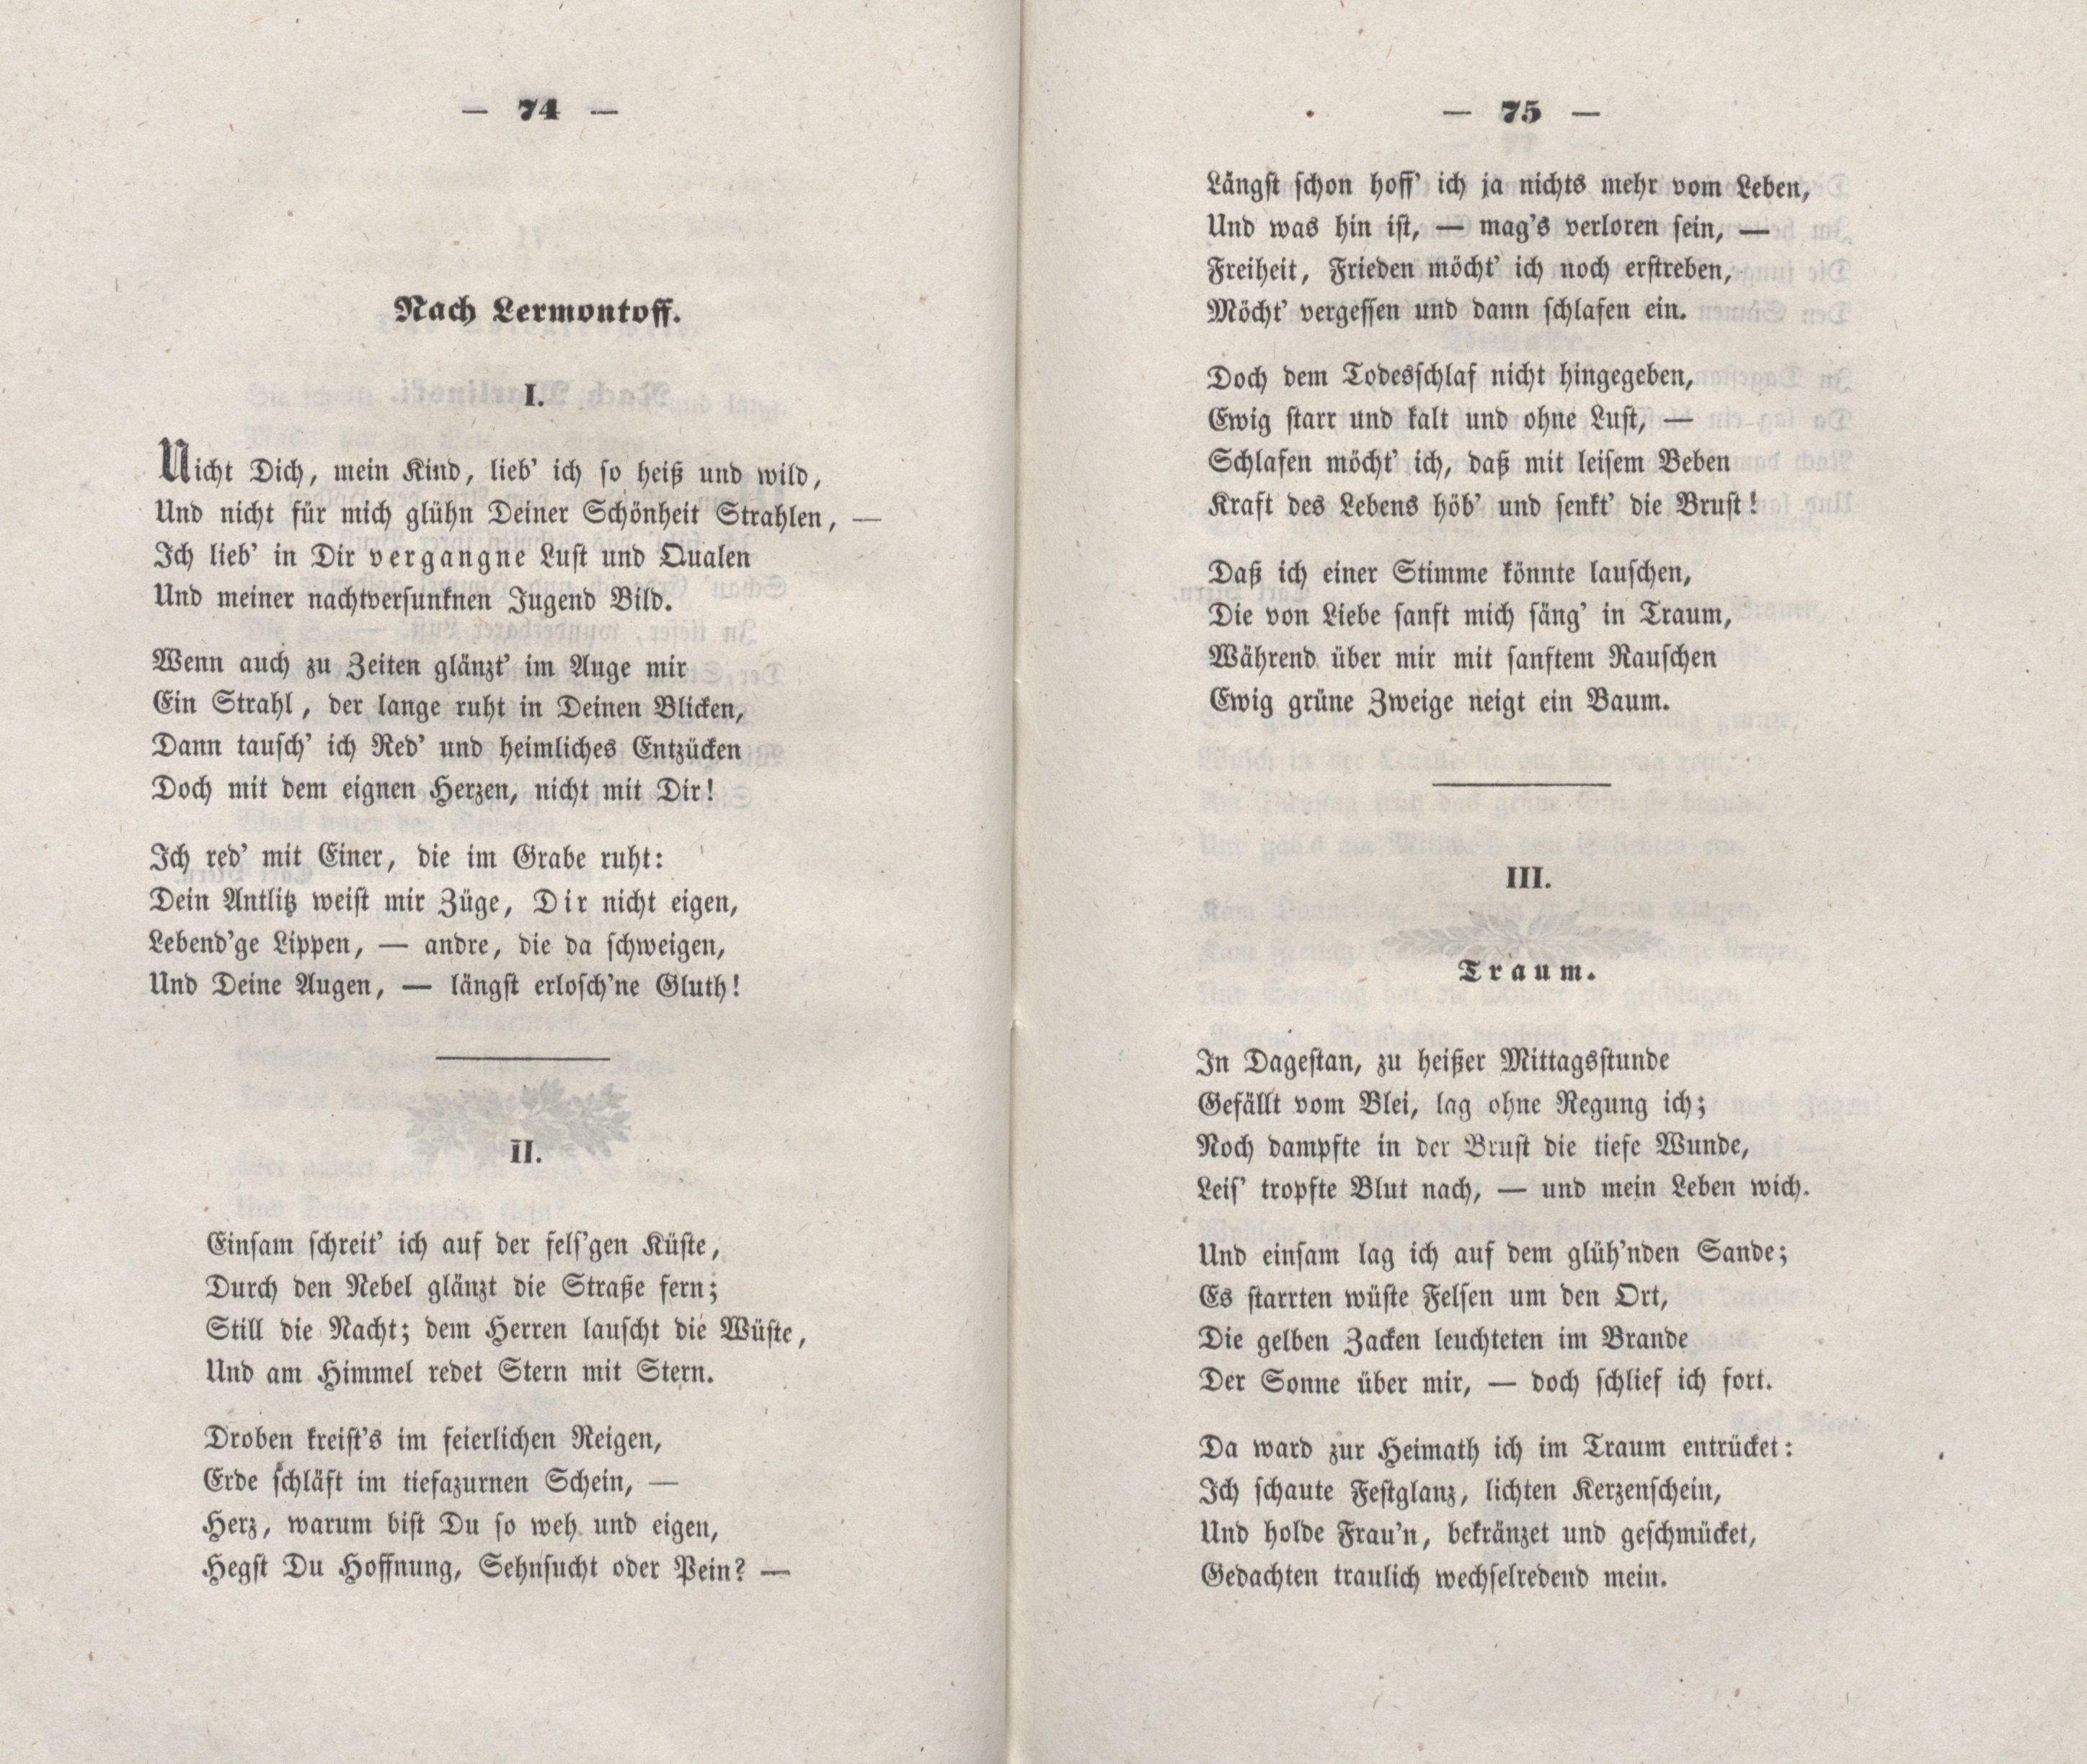 Nicht Dich, mein Kind, lieb' ich so heiss und wild... (1848) | 1. (74-75) Main body of text